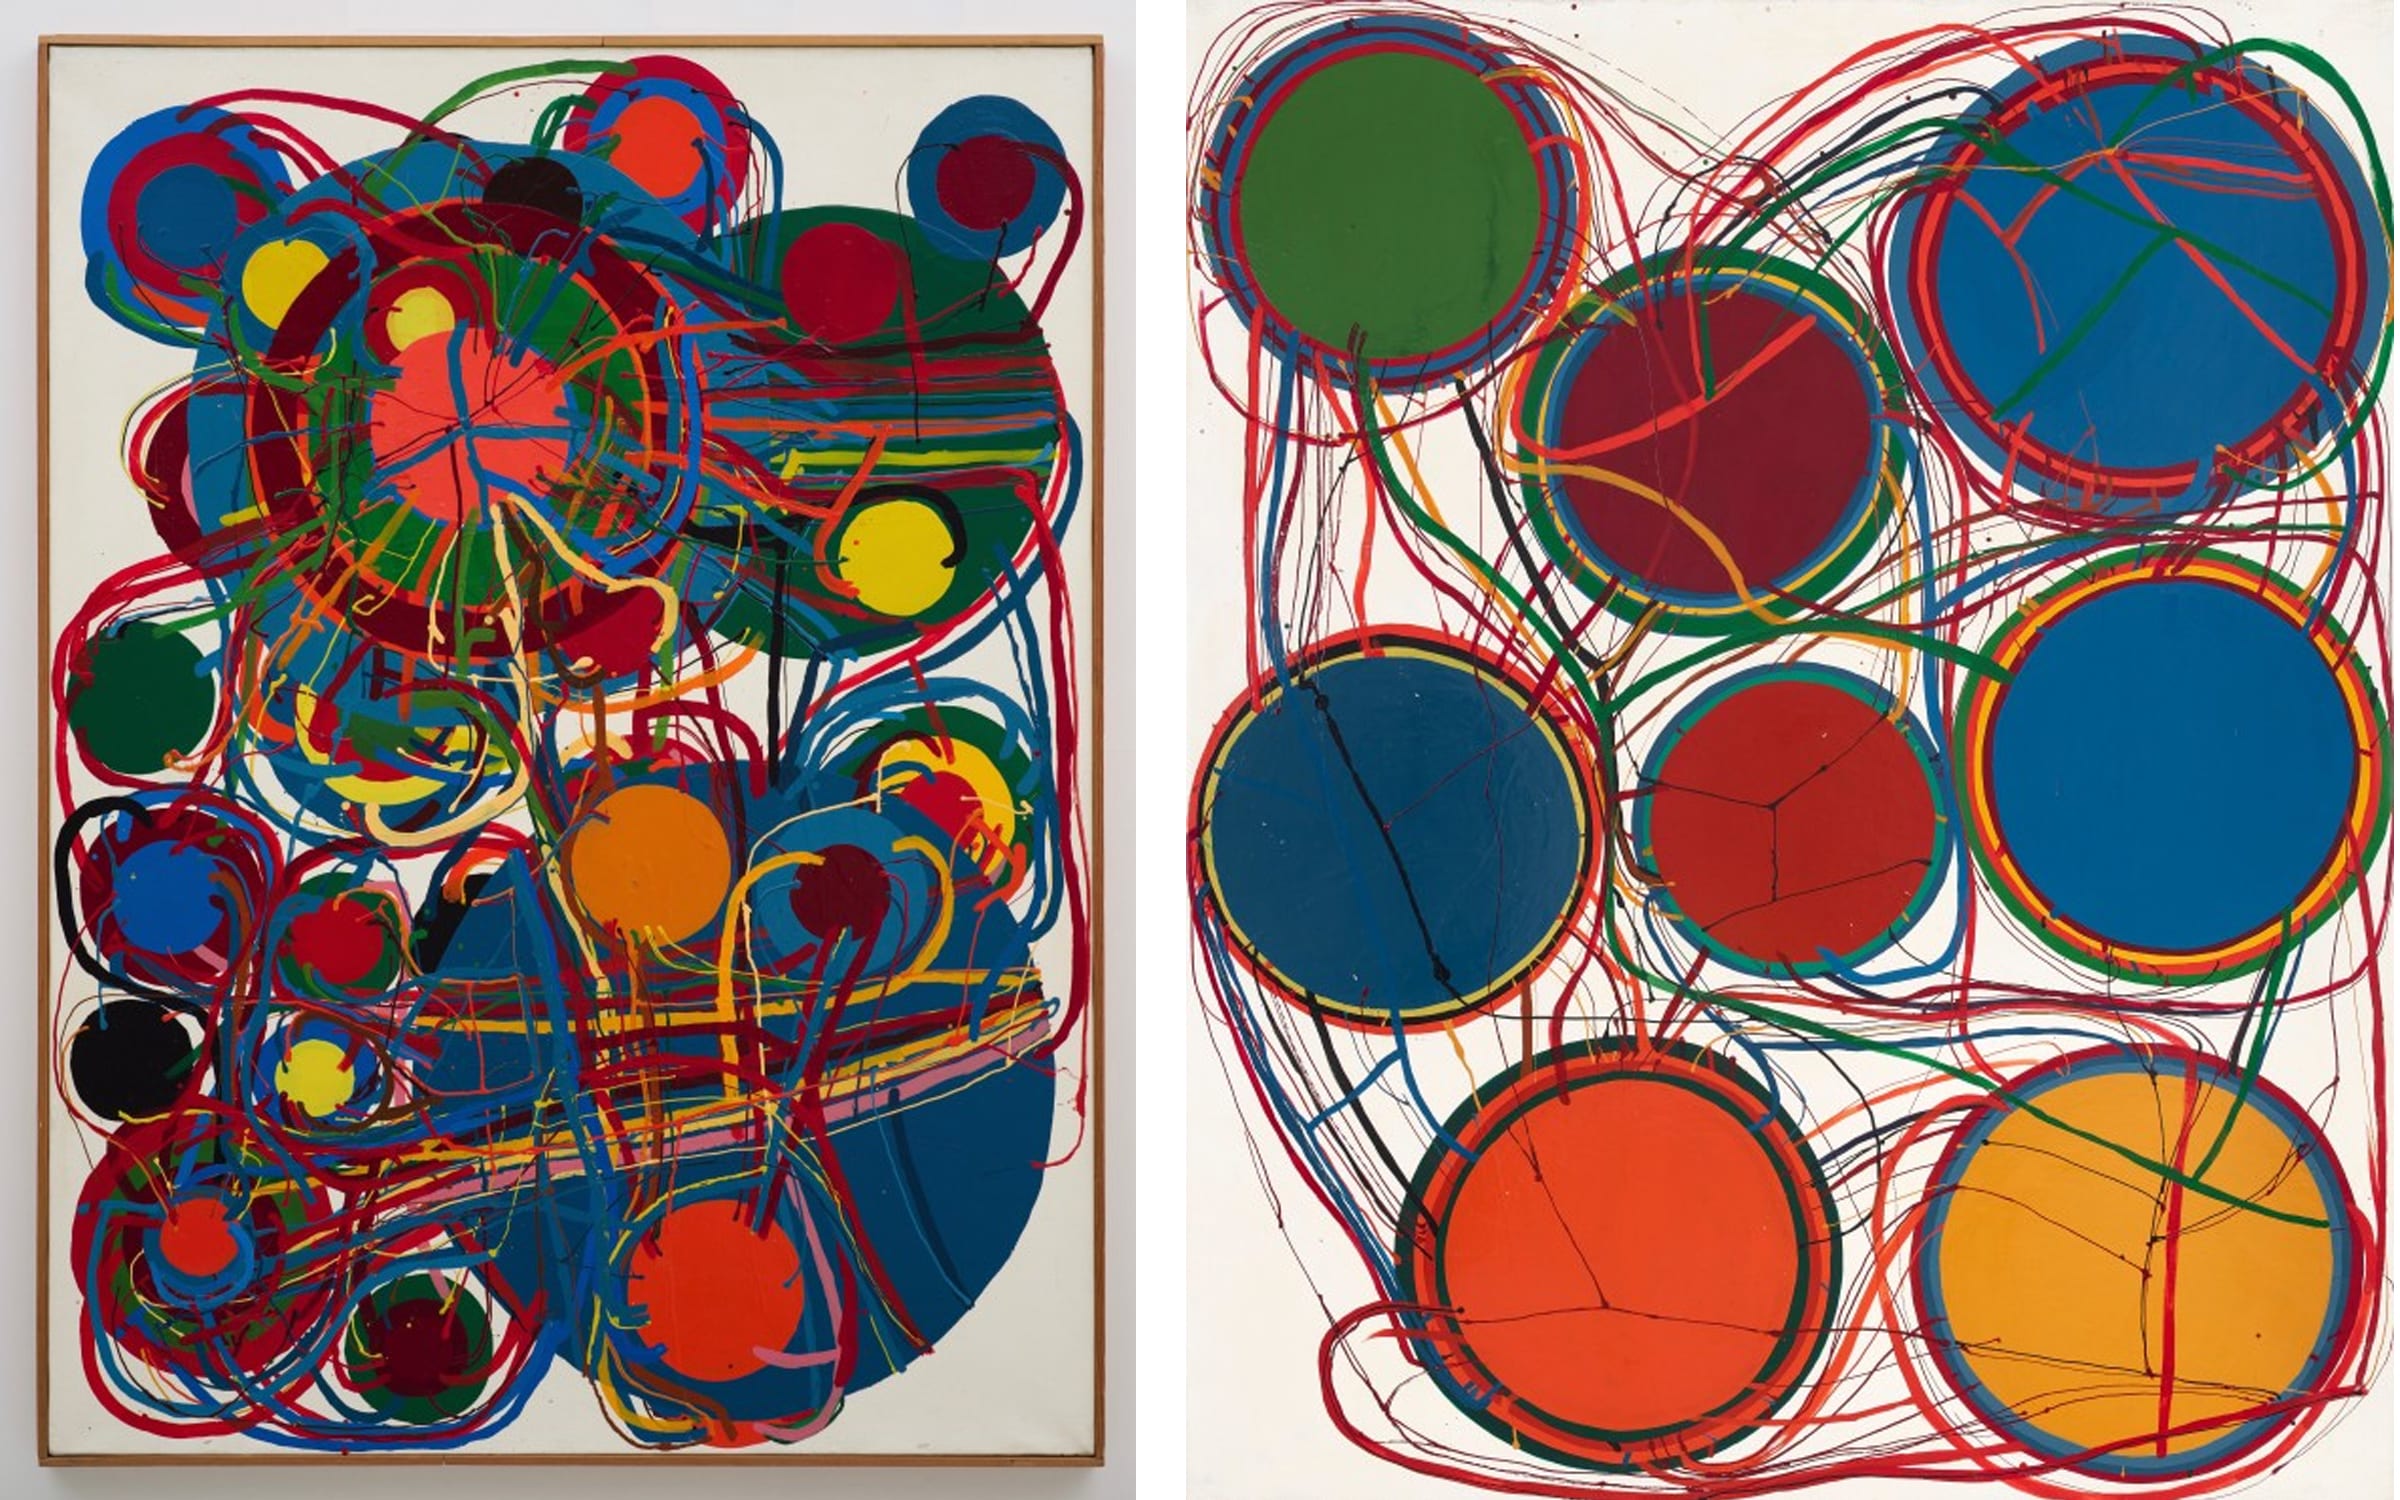 Left: Atsuko Tanaka, Untitled, 1963. Right: Atsuko Tanaka, Work, 1967. Courtesy of Tokyo Gallery + BTAP, Tokyo.